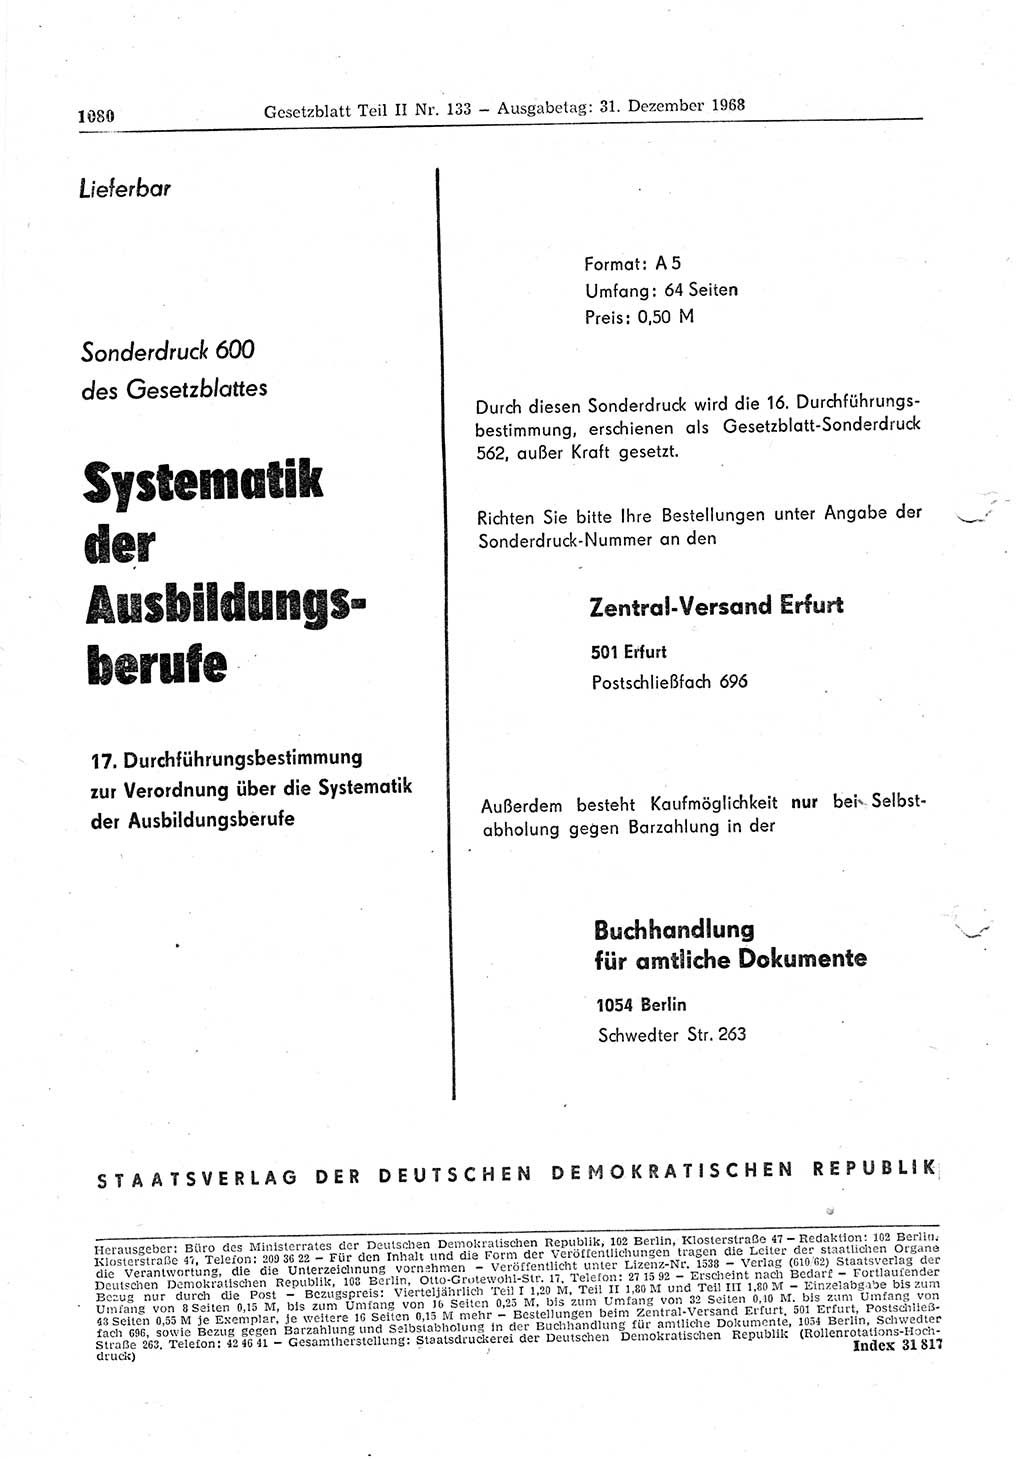 Gesetzblatt (GBl.) der Deutschen Demokratischen Republik (DDR) Teil ⅠⅠ 1968, Seite 1080 (GBl. DDR ⅠⅠ 1968, S. 1080)